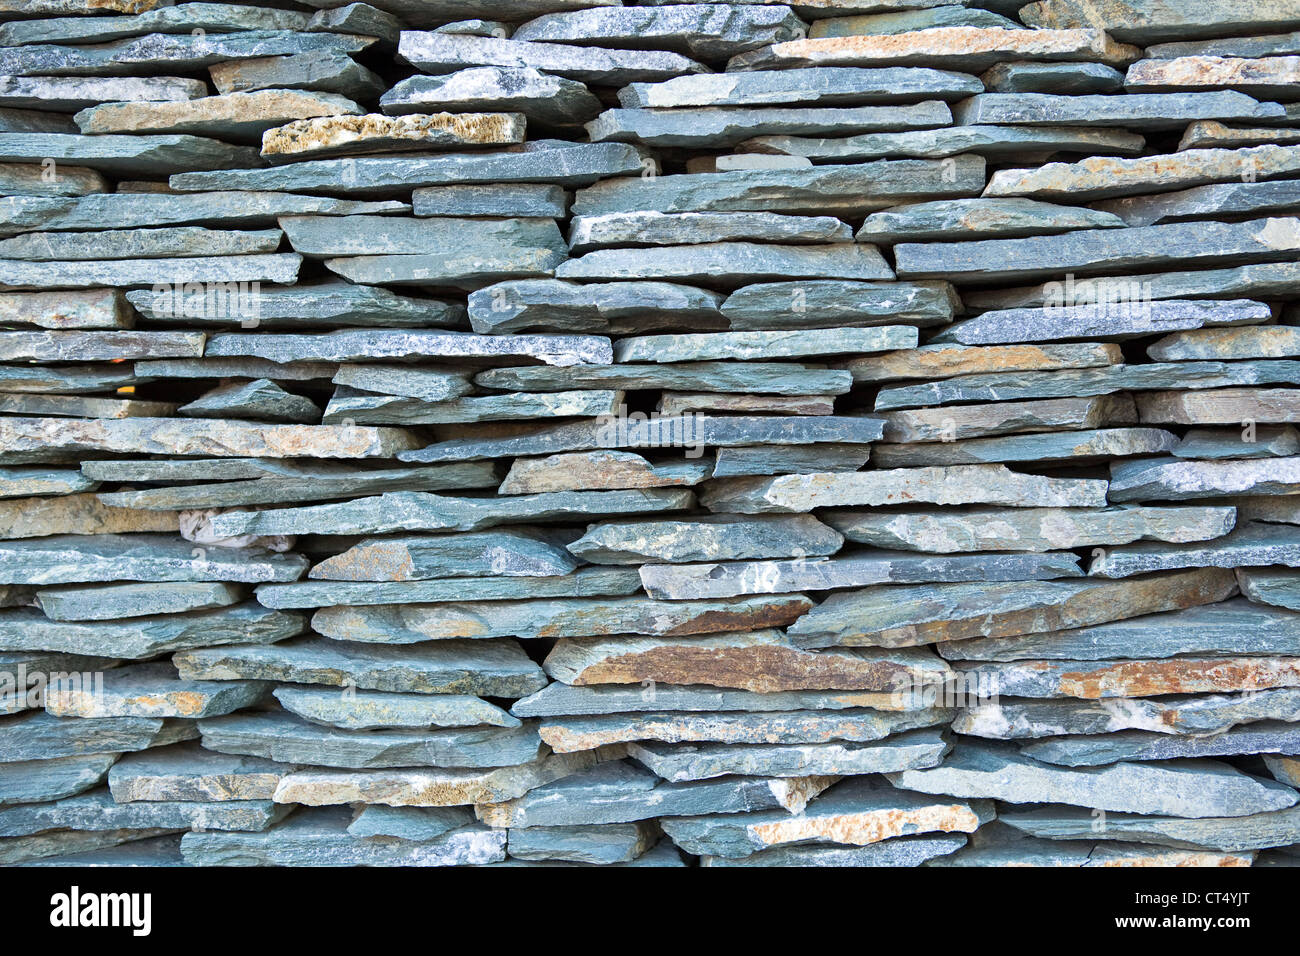 Apiladas, azul pizarra piedras. Foto de stock